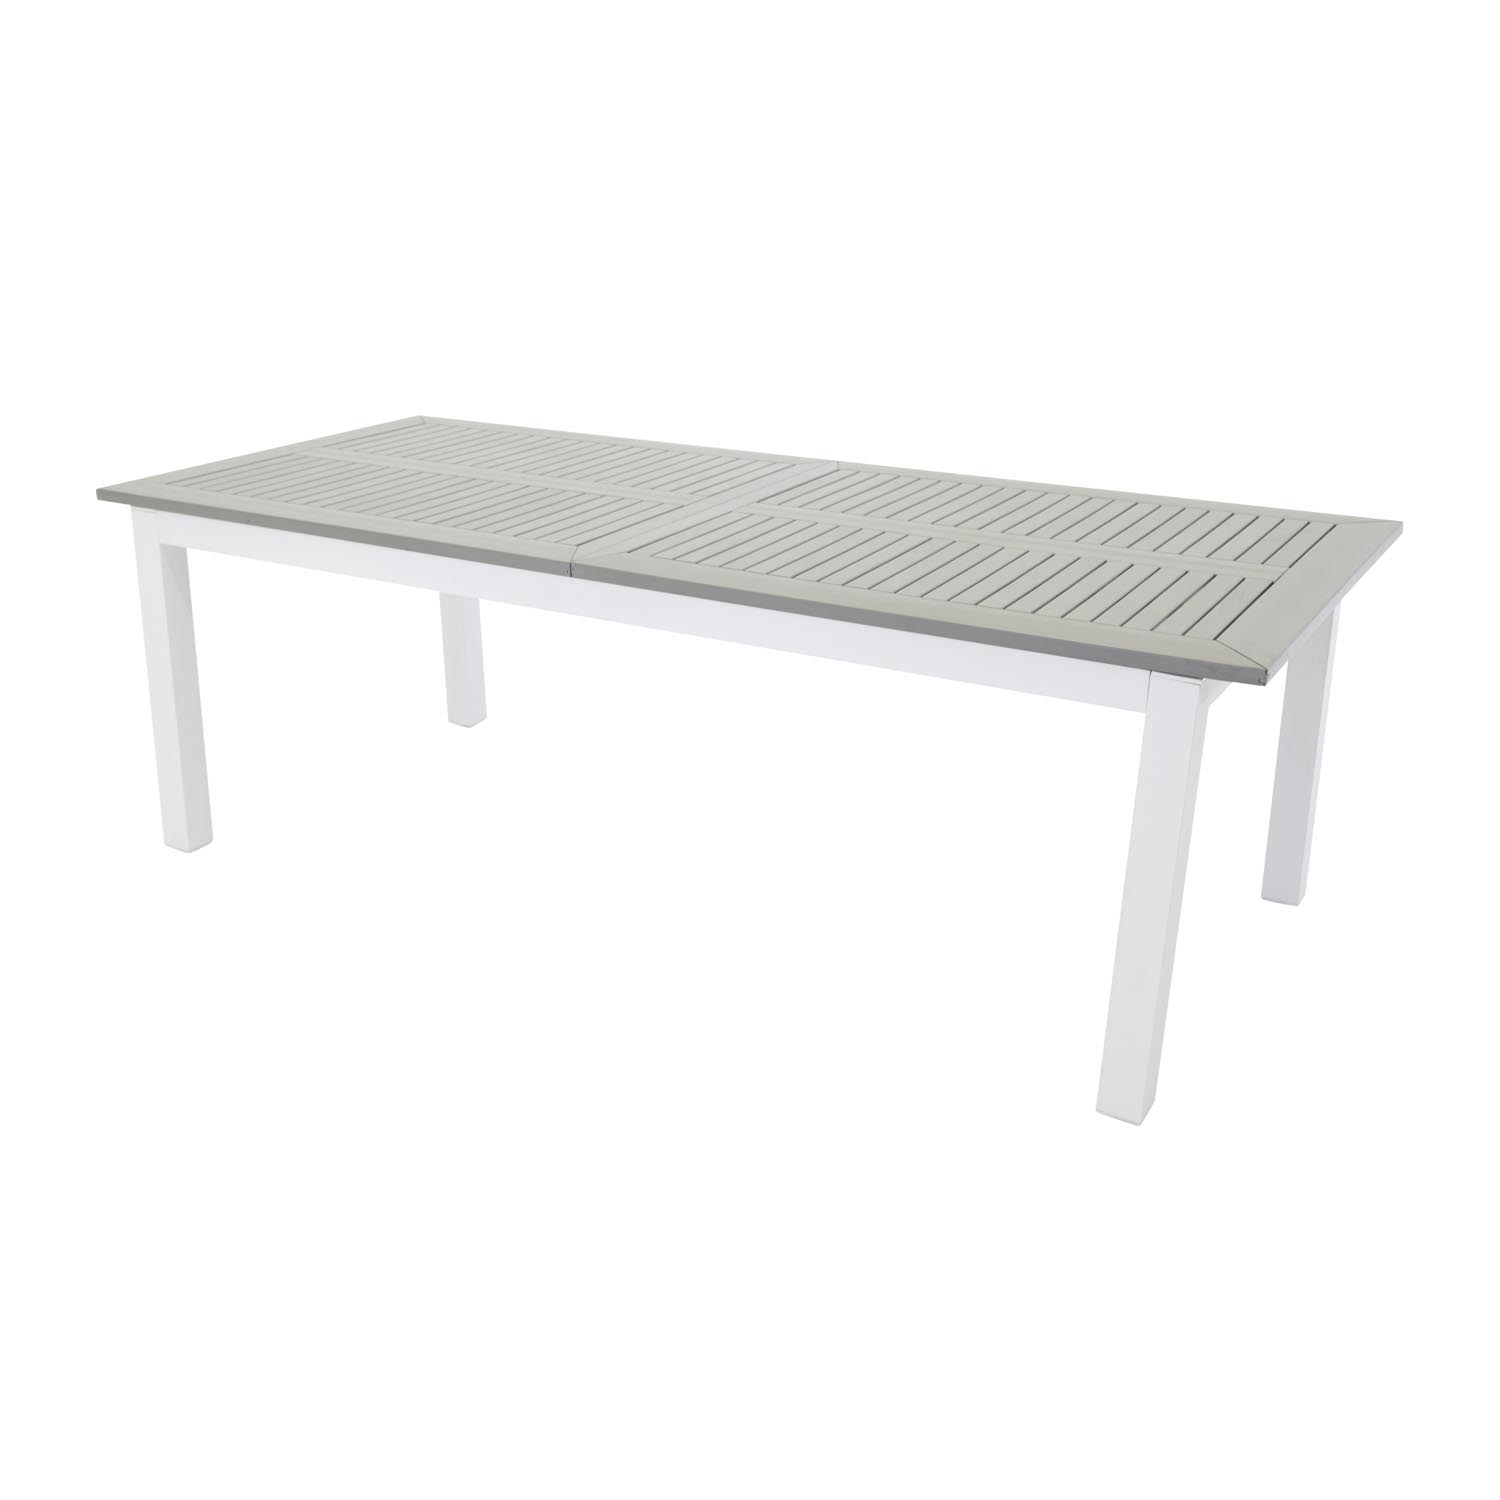 VENTURE DESIGN rektangulær Albany havebord med tillægsplader - grå, hvid aluminium (224/324x100)